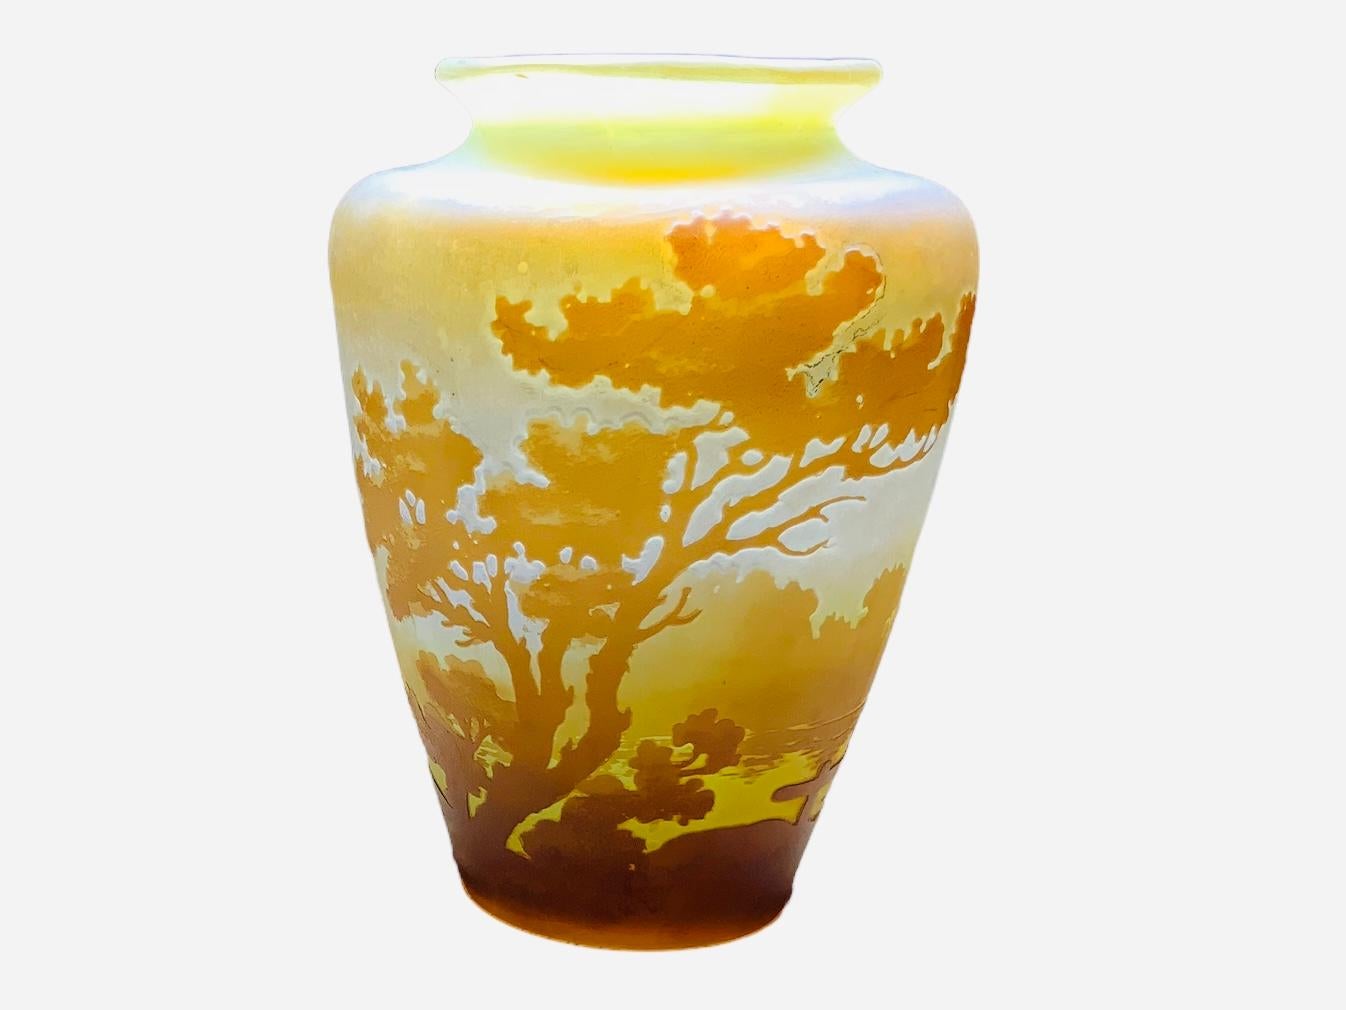 Dies ist ein Emile Galle kleine Urne geformt Landschaft Kamee Vase. Es hat einen Hintergrund aus mattiertem gelbem Glas, der durch verschiedene Brauntöne hervorgehoben wird. Die braune Farbe wird in der Runde dunkler  Sockel und deckt ihn